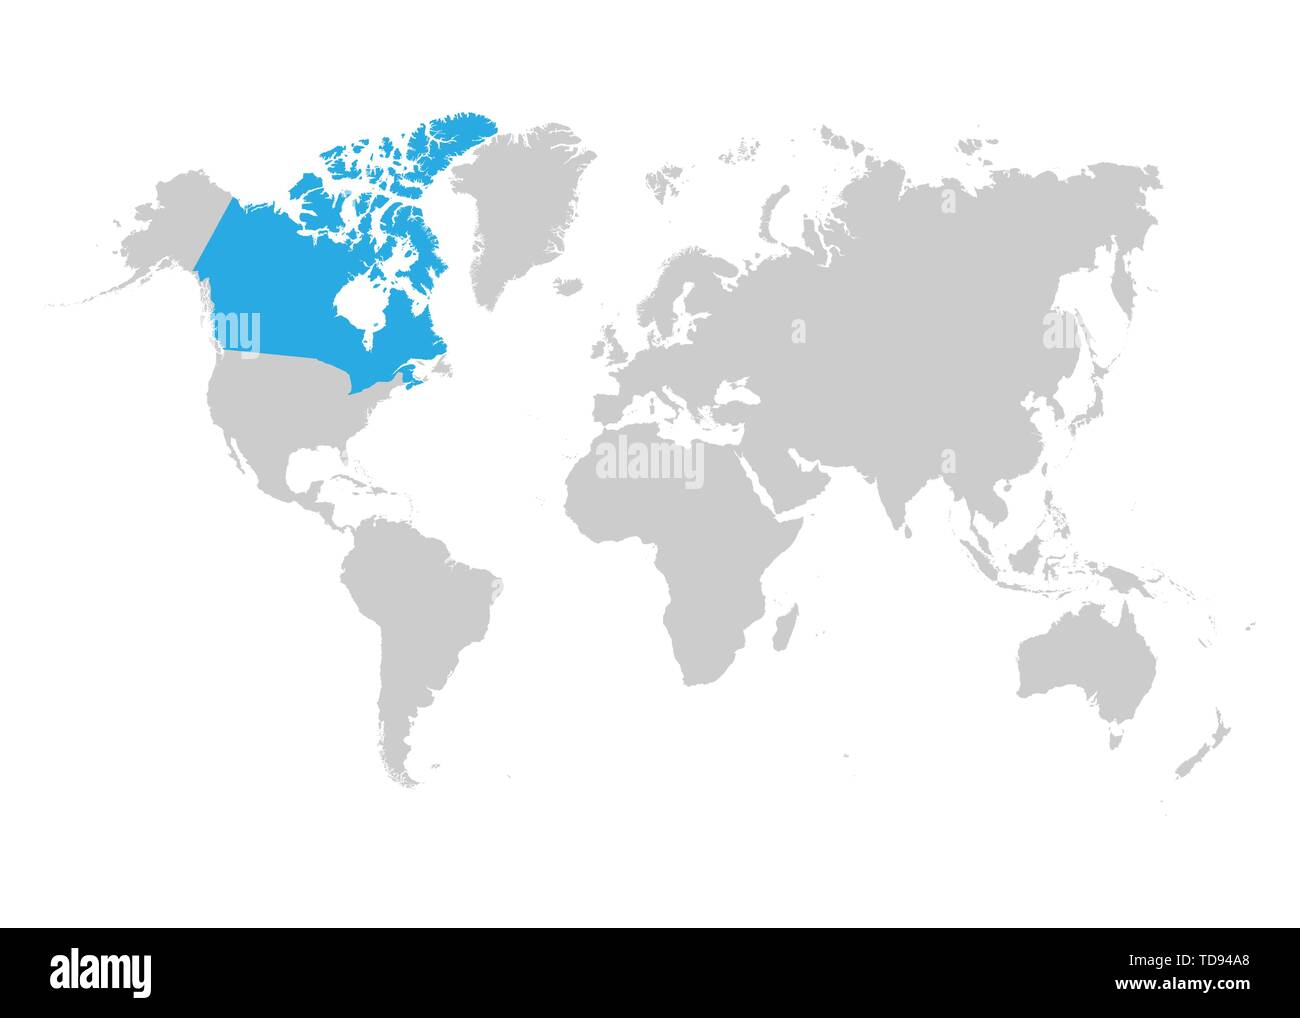 La mappa del Canada è evidenziata in blu sulla mappa del mondo Illustrazione Vettoriale